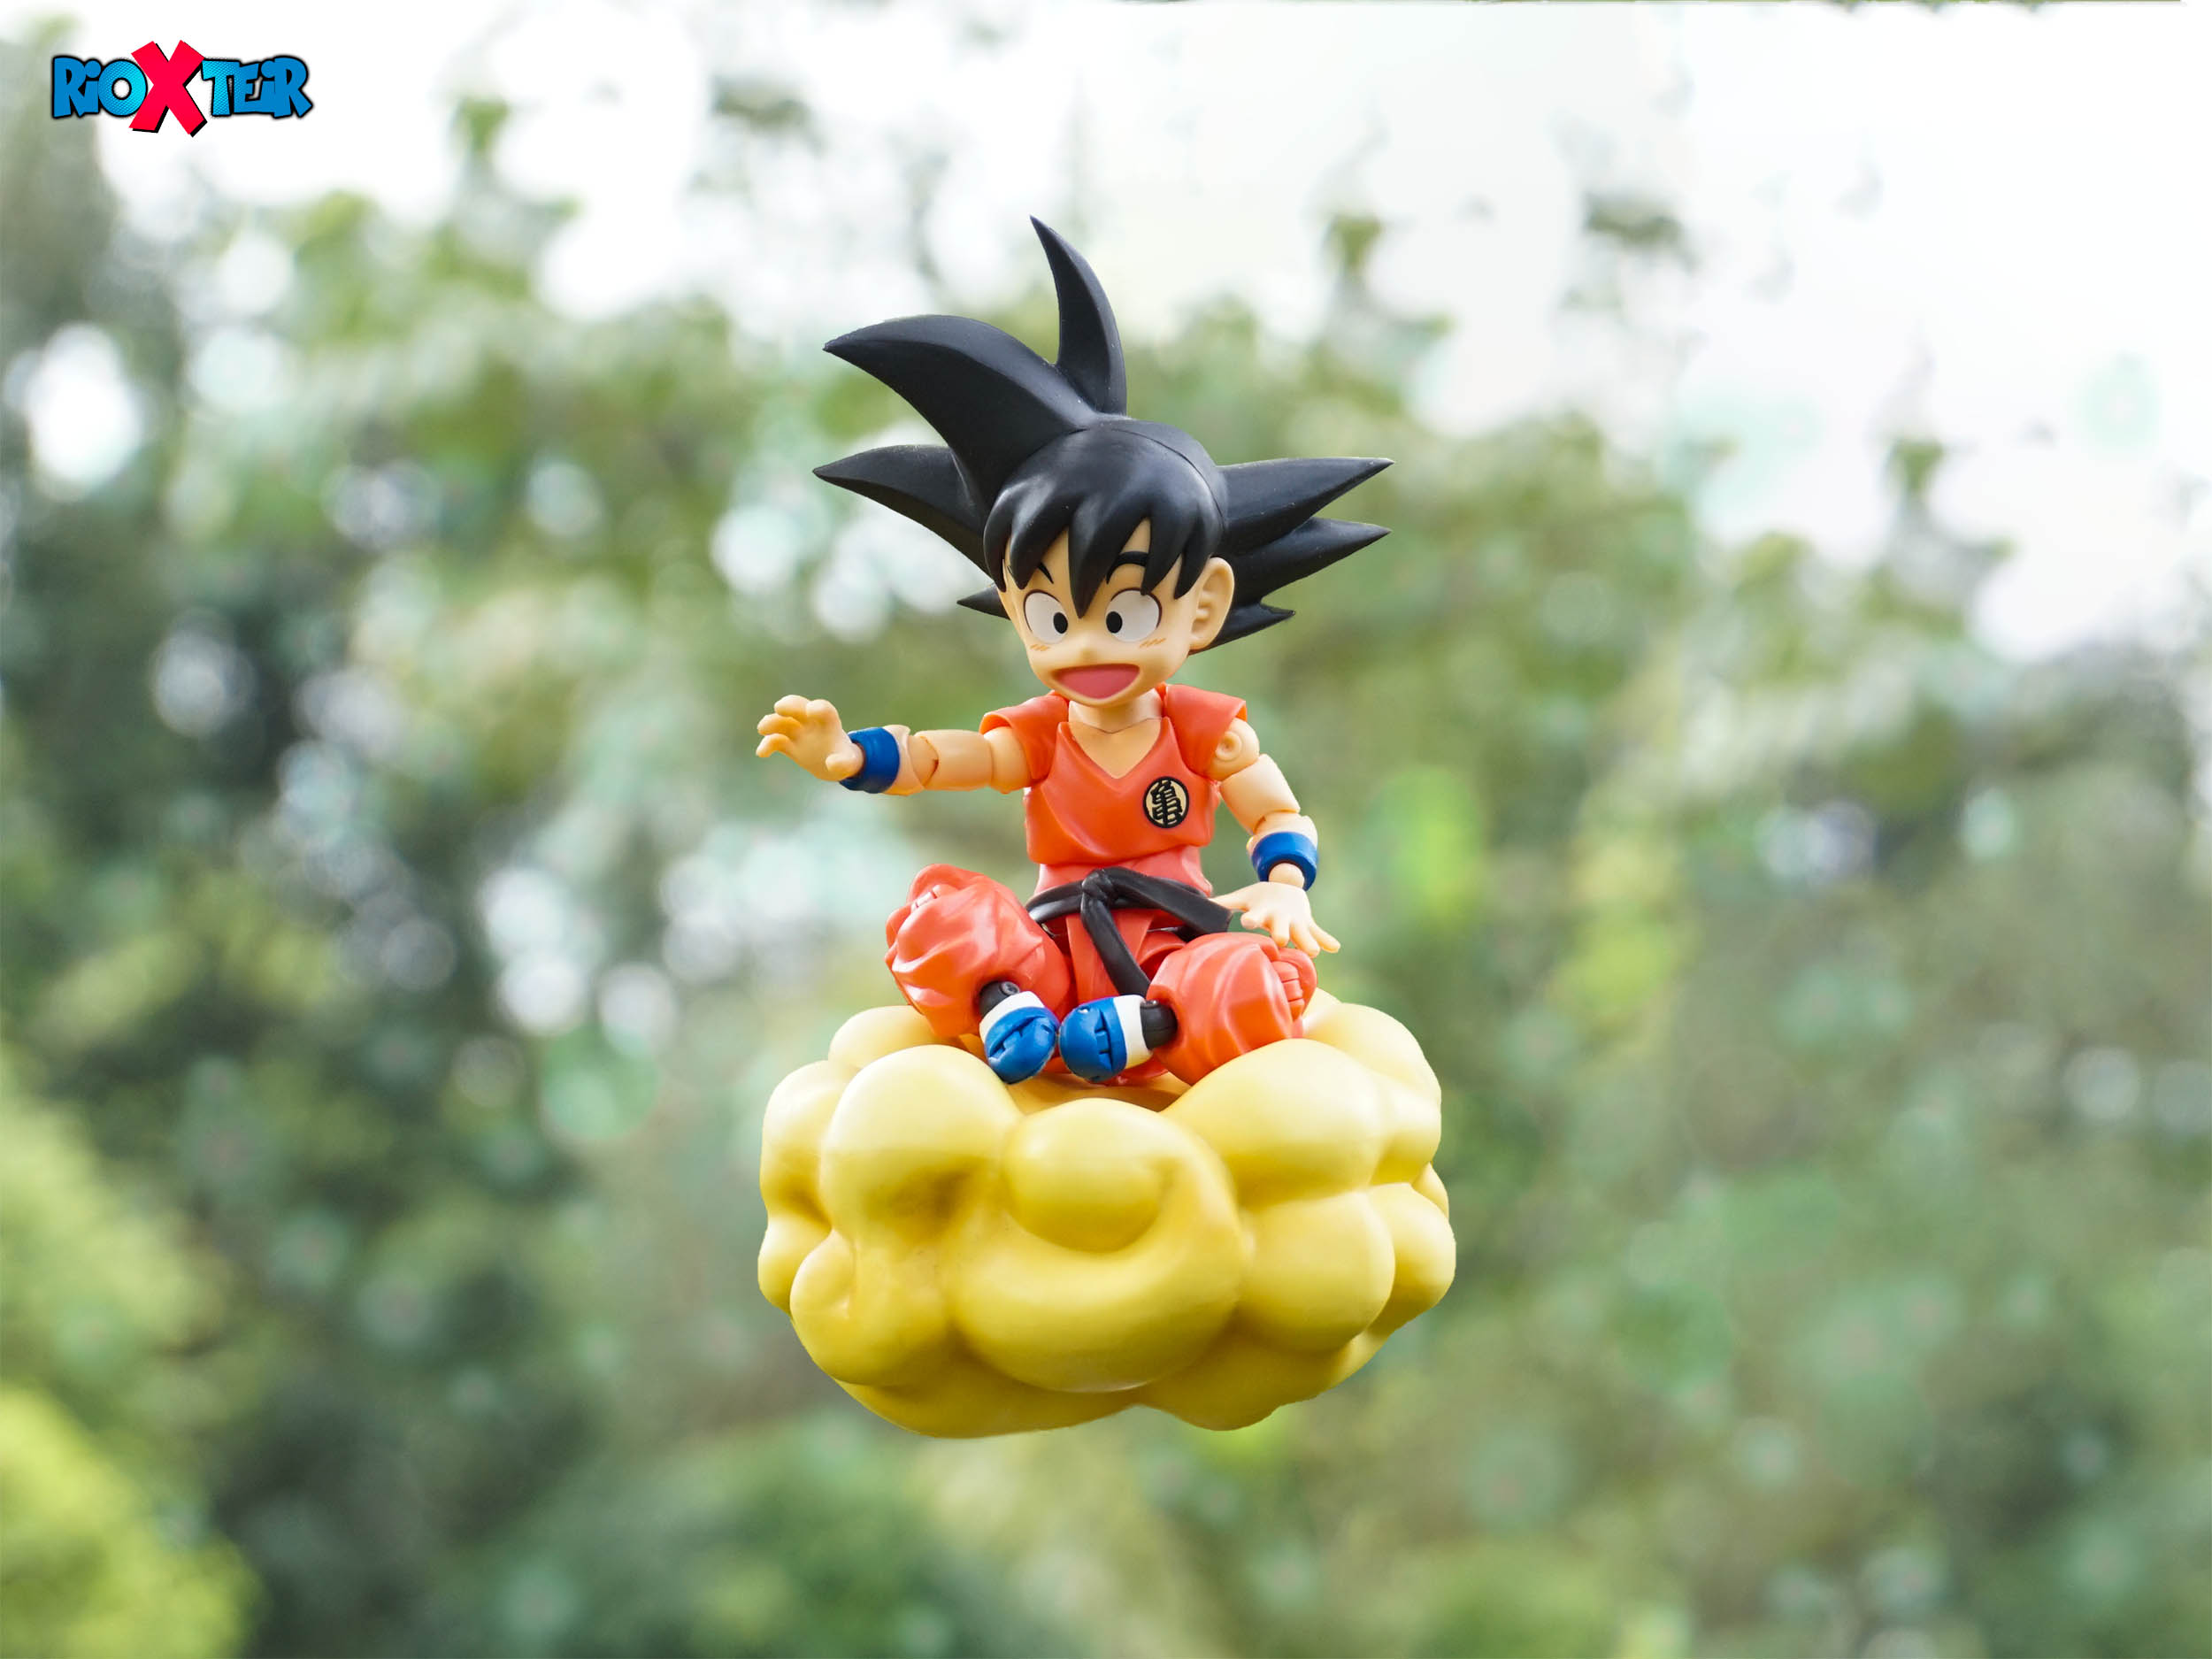 Kid Goku Going To Enjoy The Weekend